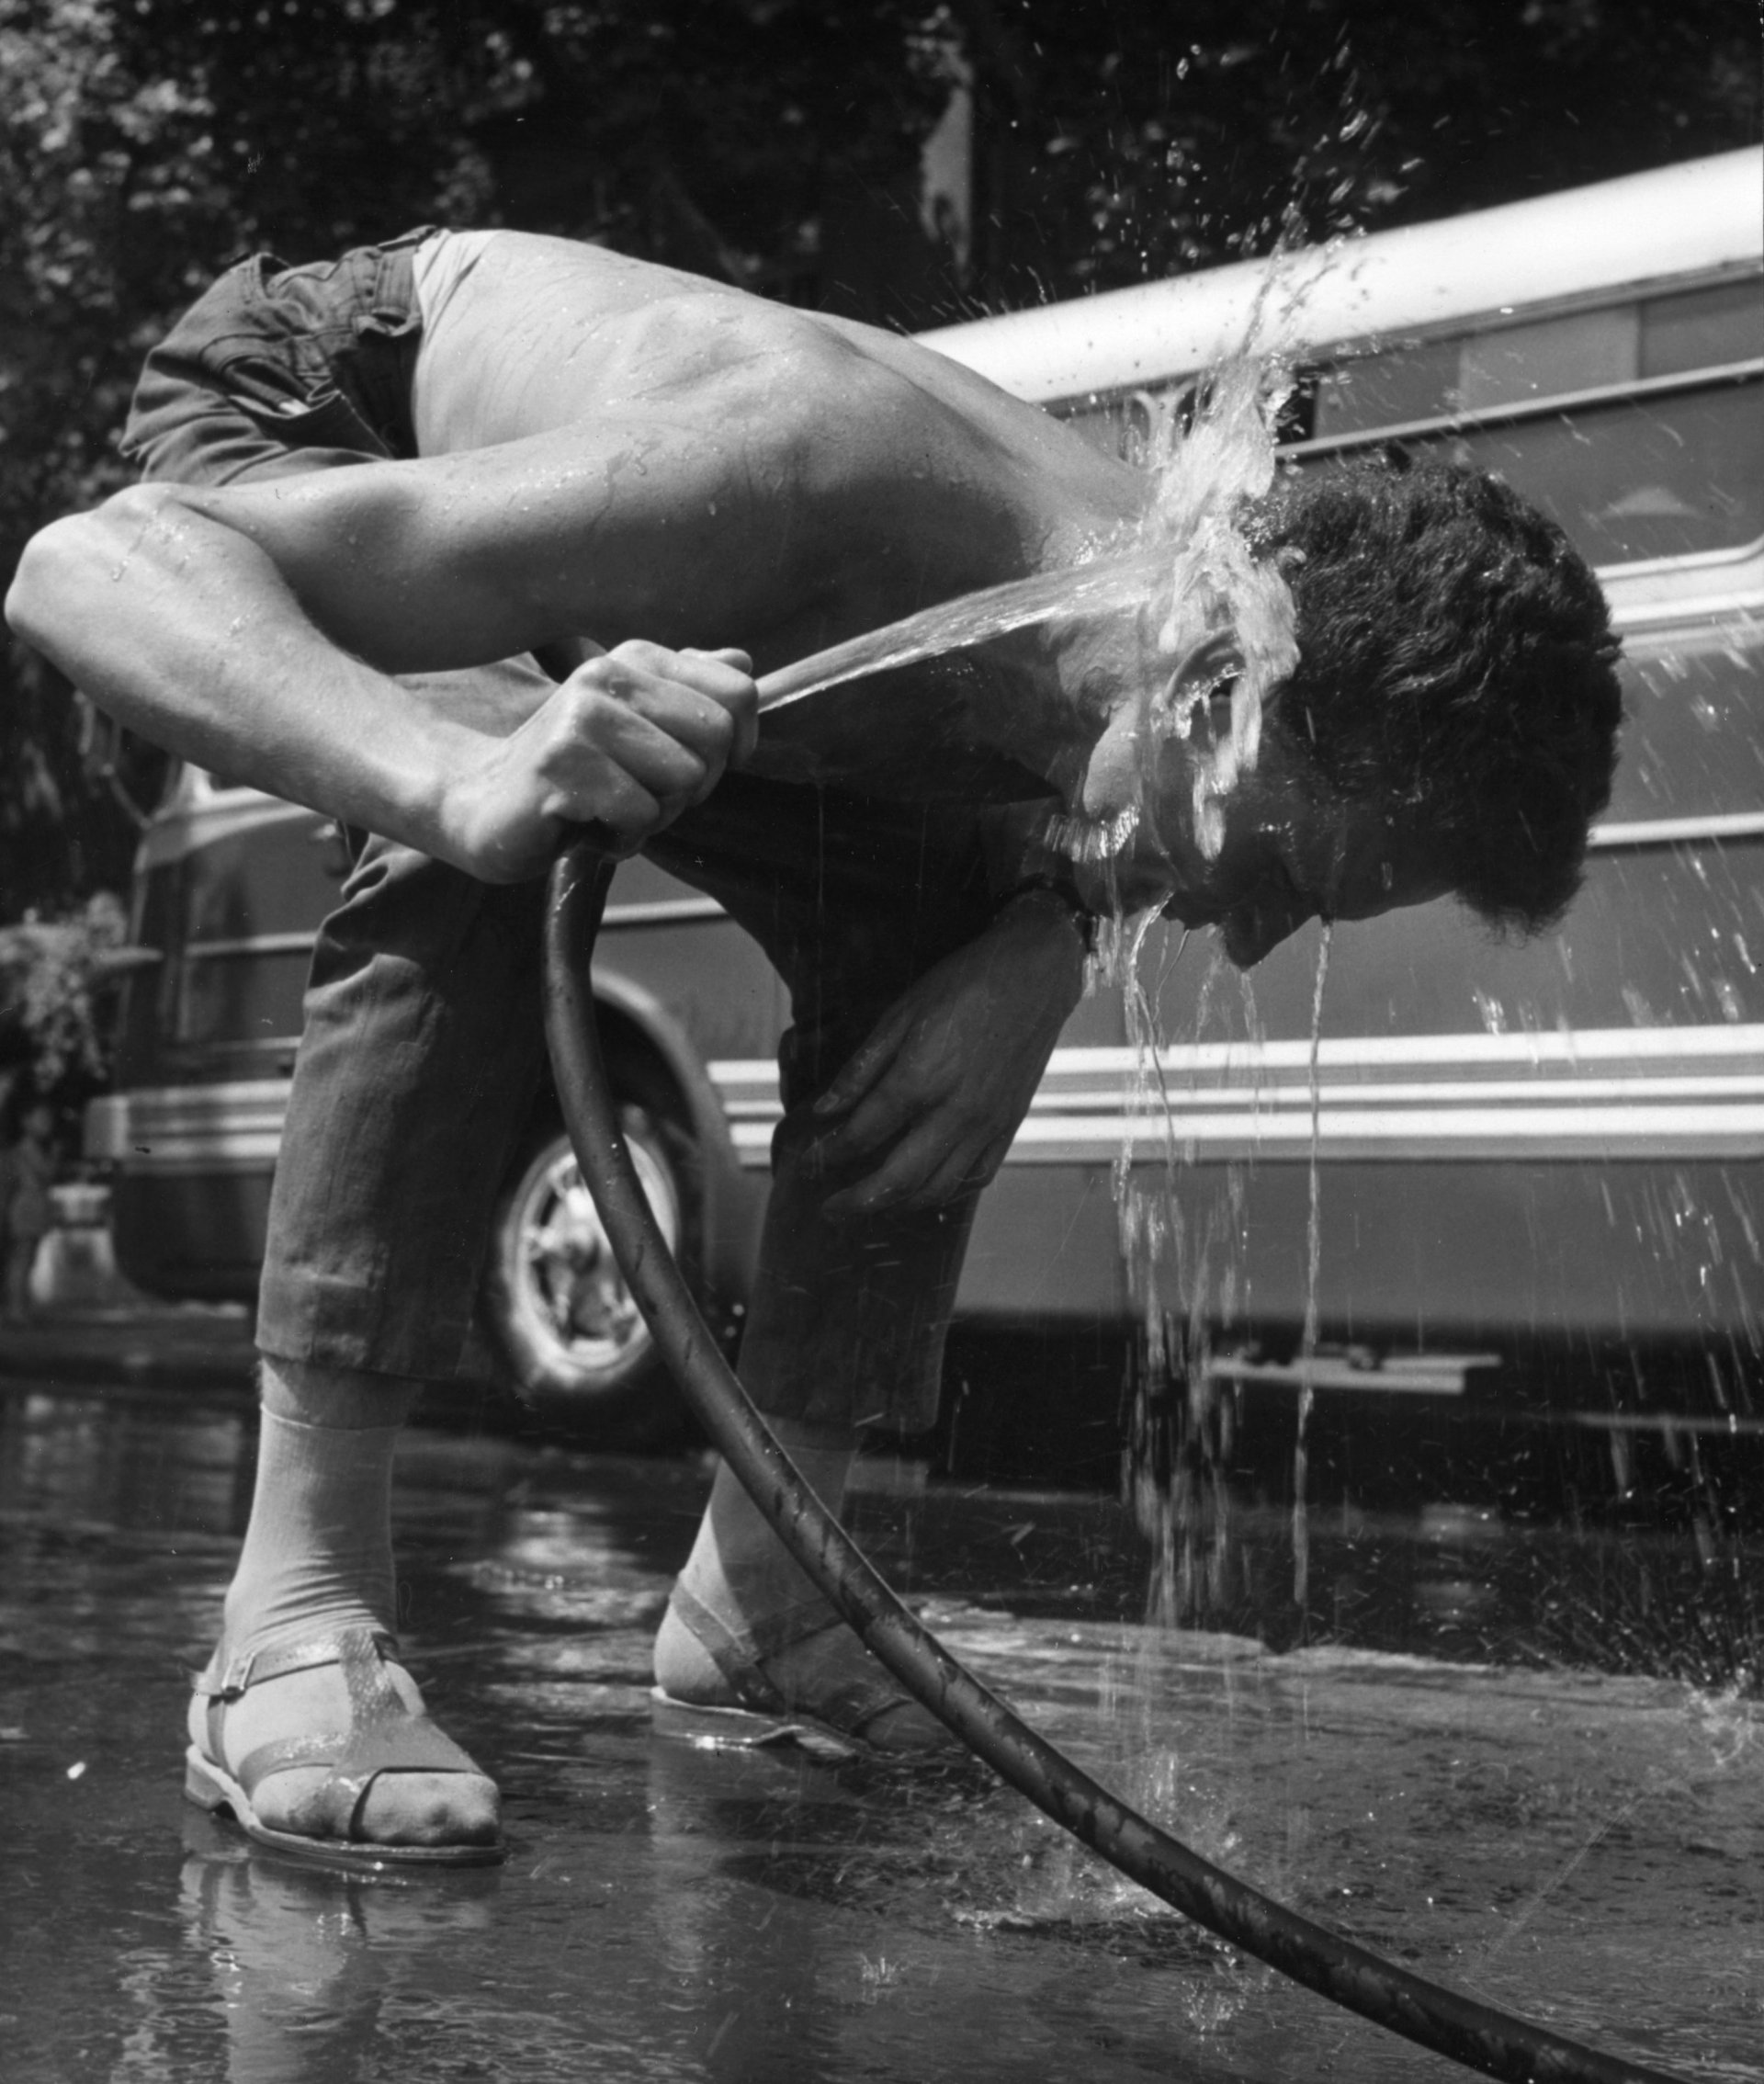 18 юли 1963 г.: Шофьор на автобус се разхлажда на автогарата по време на много горещо лято в Будапеща. (Снимка от Keystone/Getty Images)